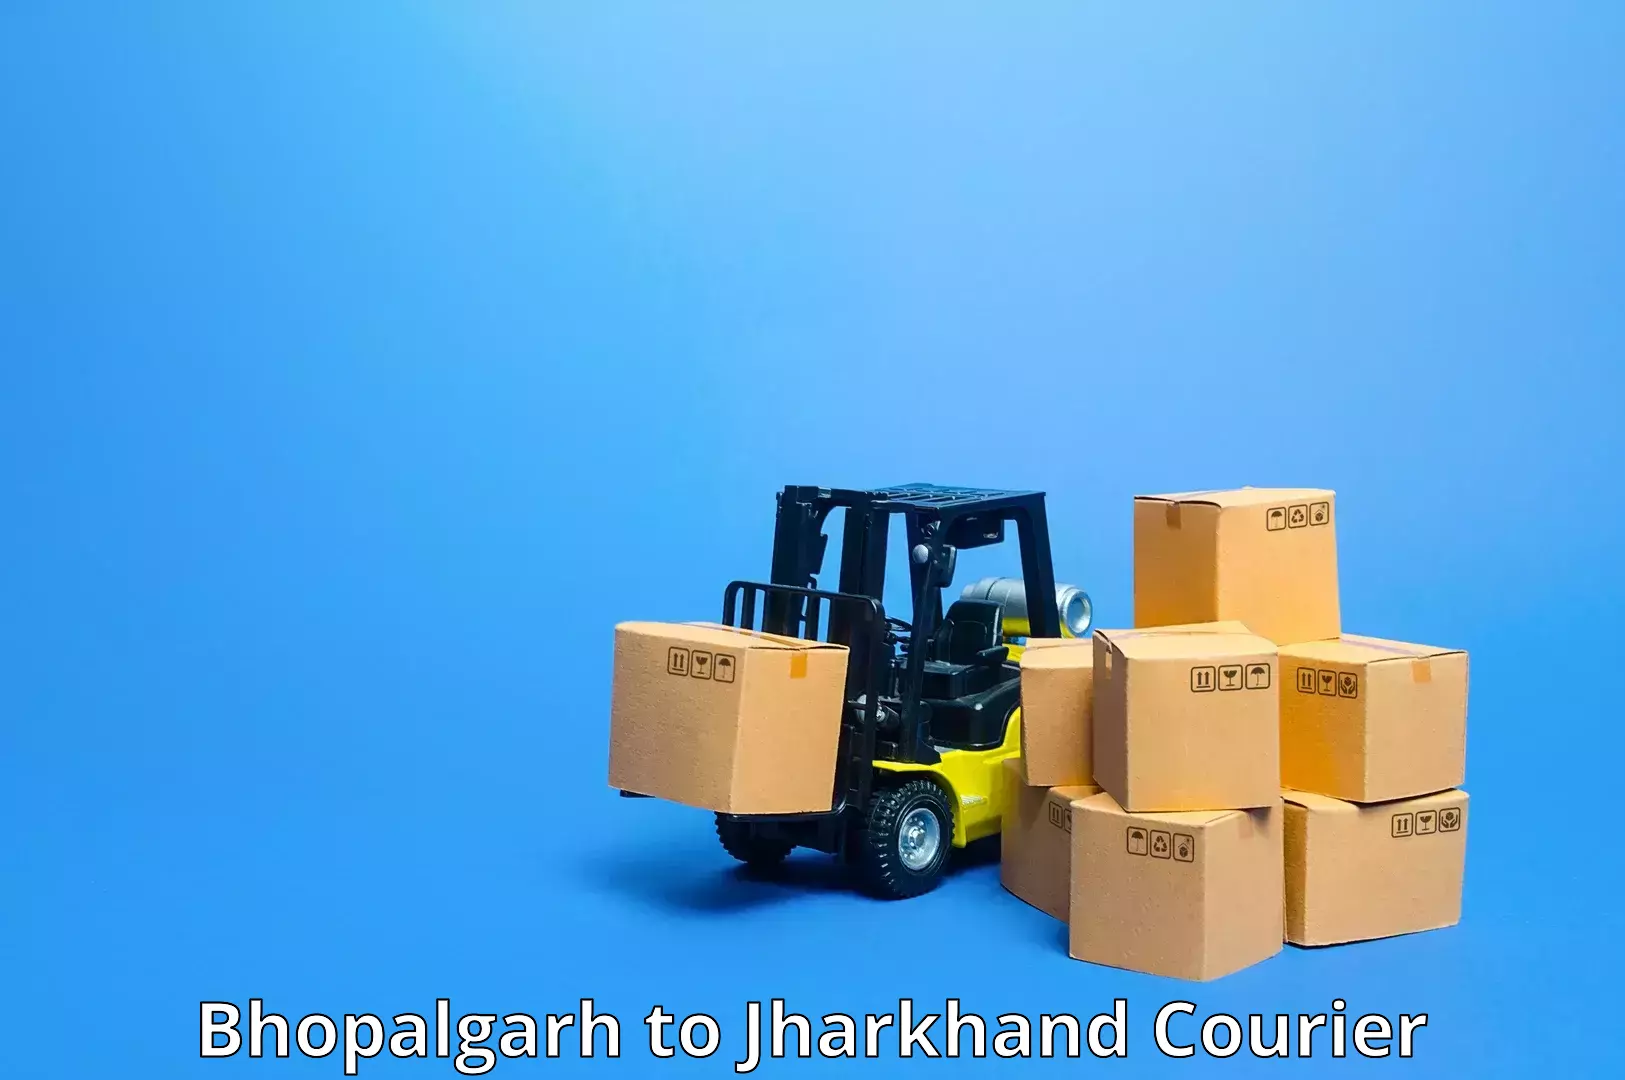 Fast-track shipping solutions Bhopalgarh to Panki Palamu